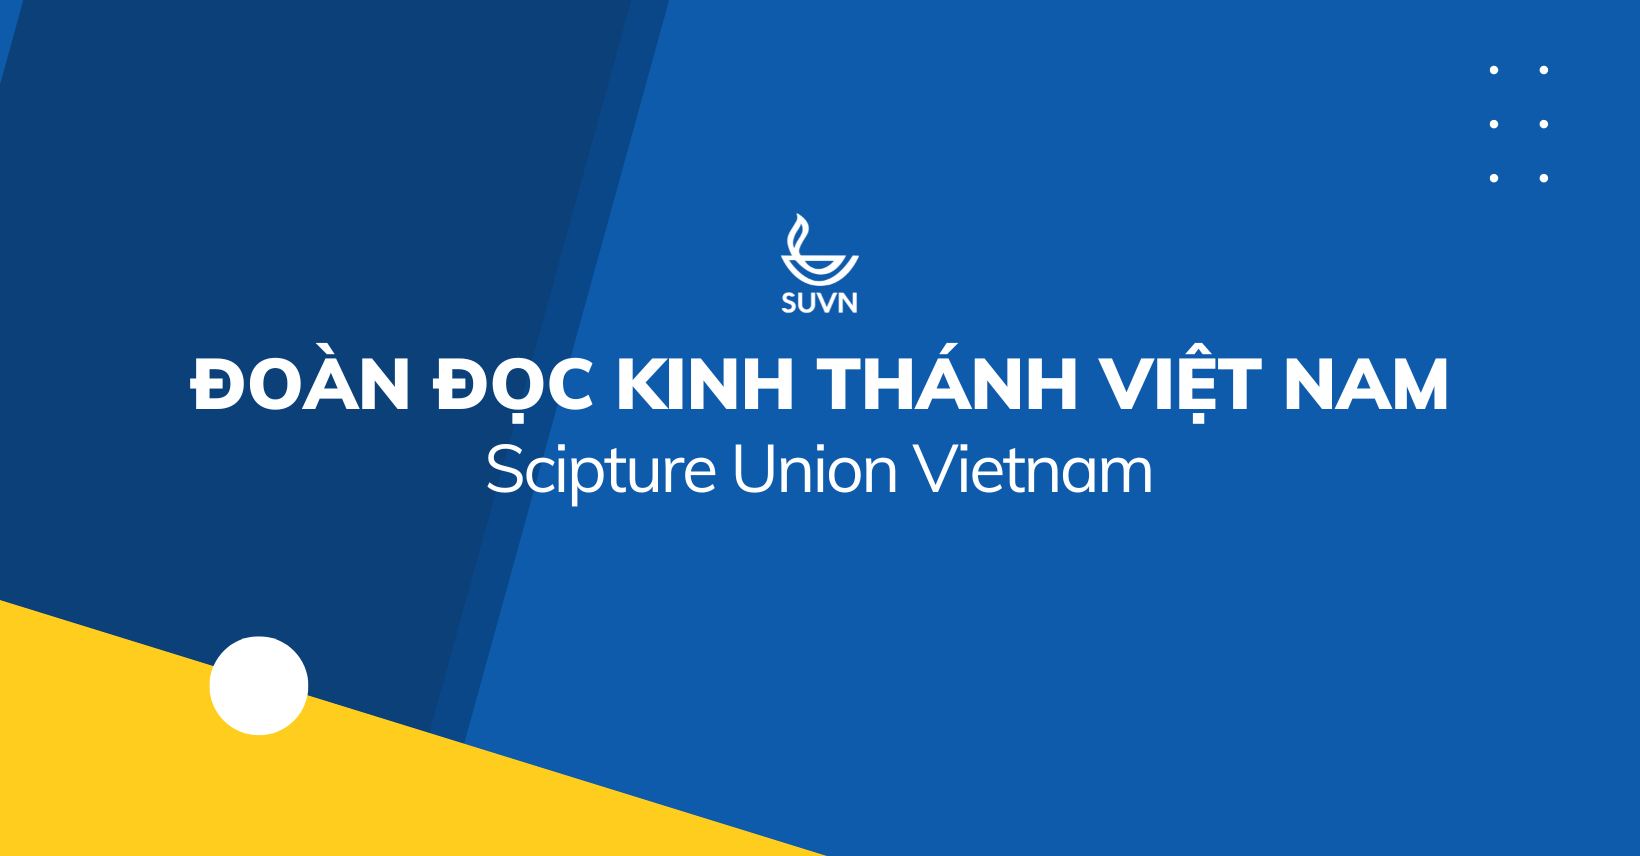 Đoàn Đọc Kinh Thánh Việt Nam - Scripture Union Vietnam